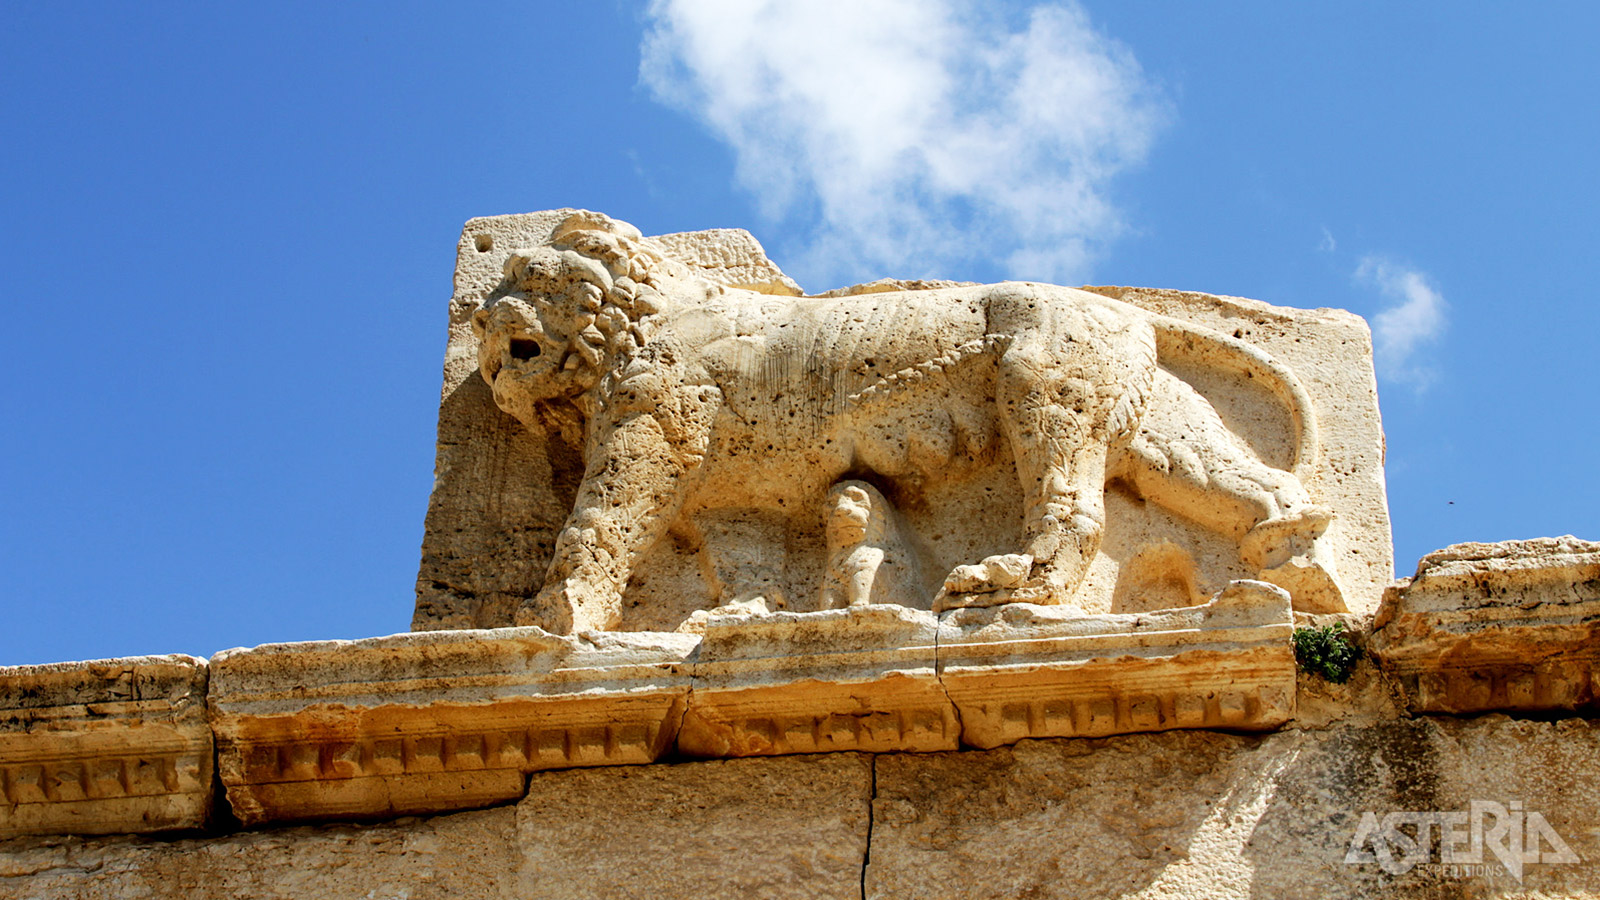 Qasr al-Abad of het ’Paleis van de Slaaf’ is een belangrijke archeologische vindplaats, genoemd in diverse bijbelse en historische teksten